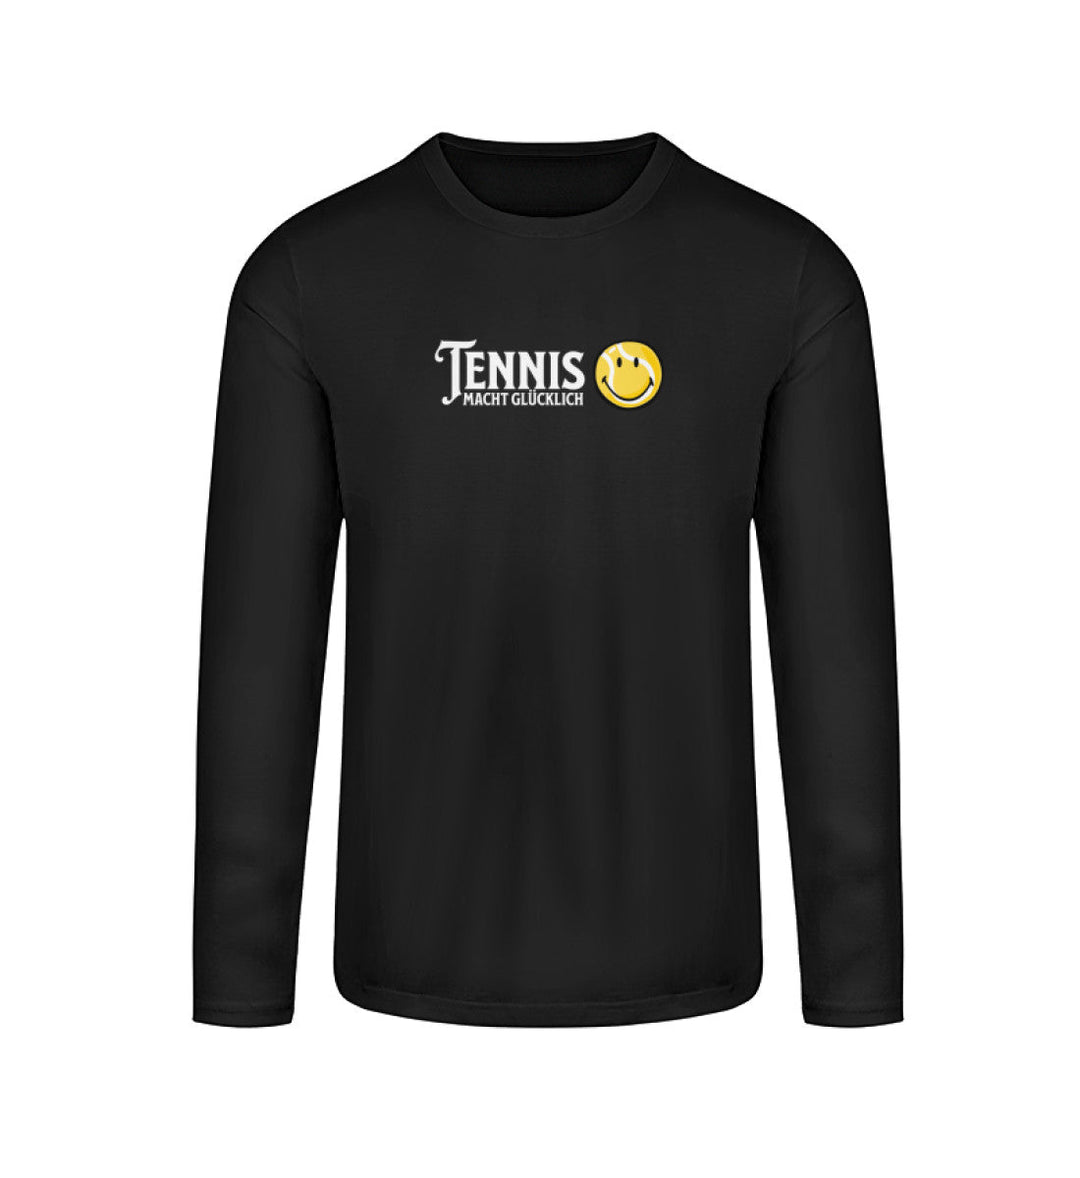 Tennis macht glücklich | Longsleeve Unisex - Matchpoint24 - Kleidung für Tennisfans